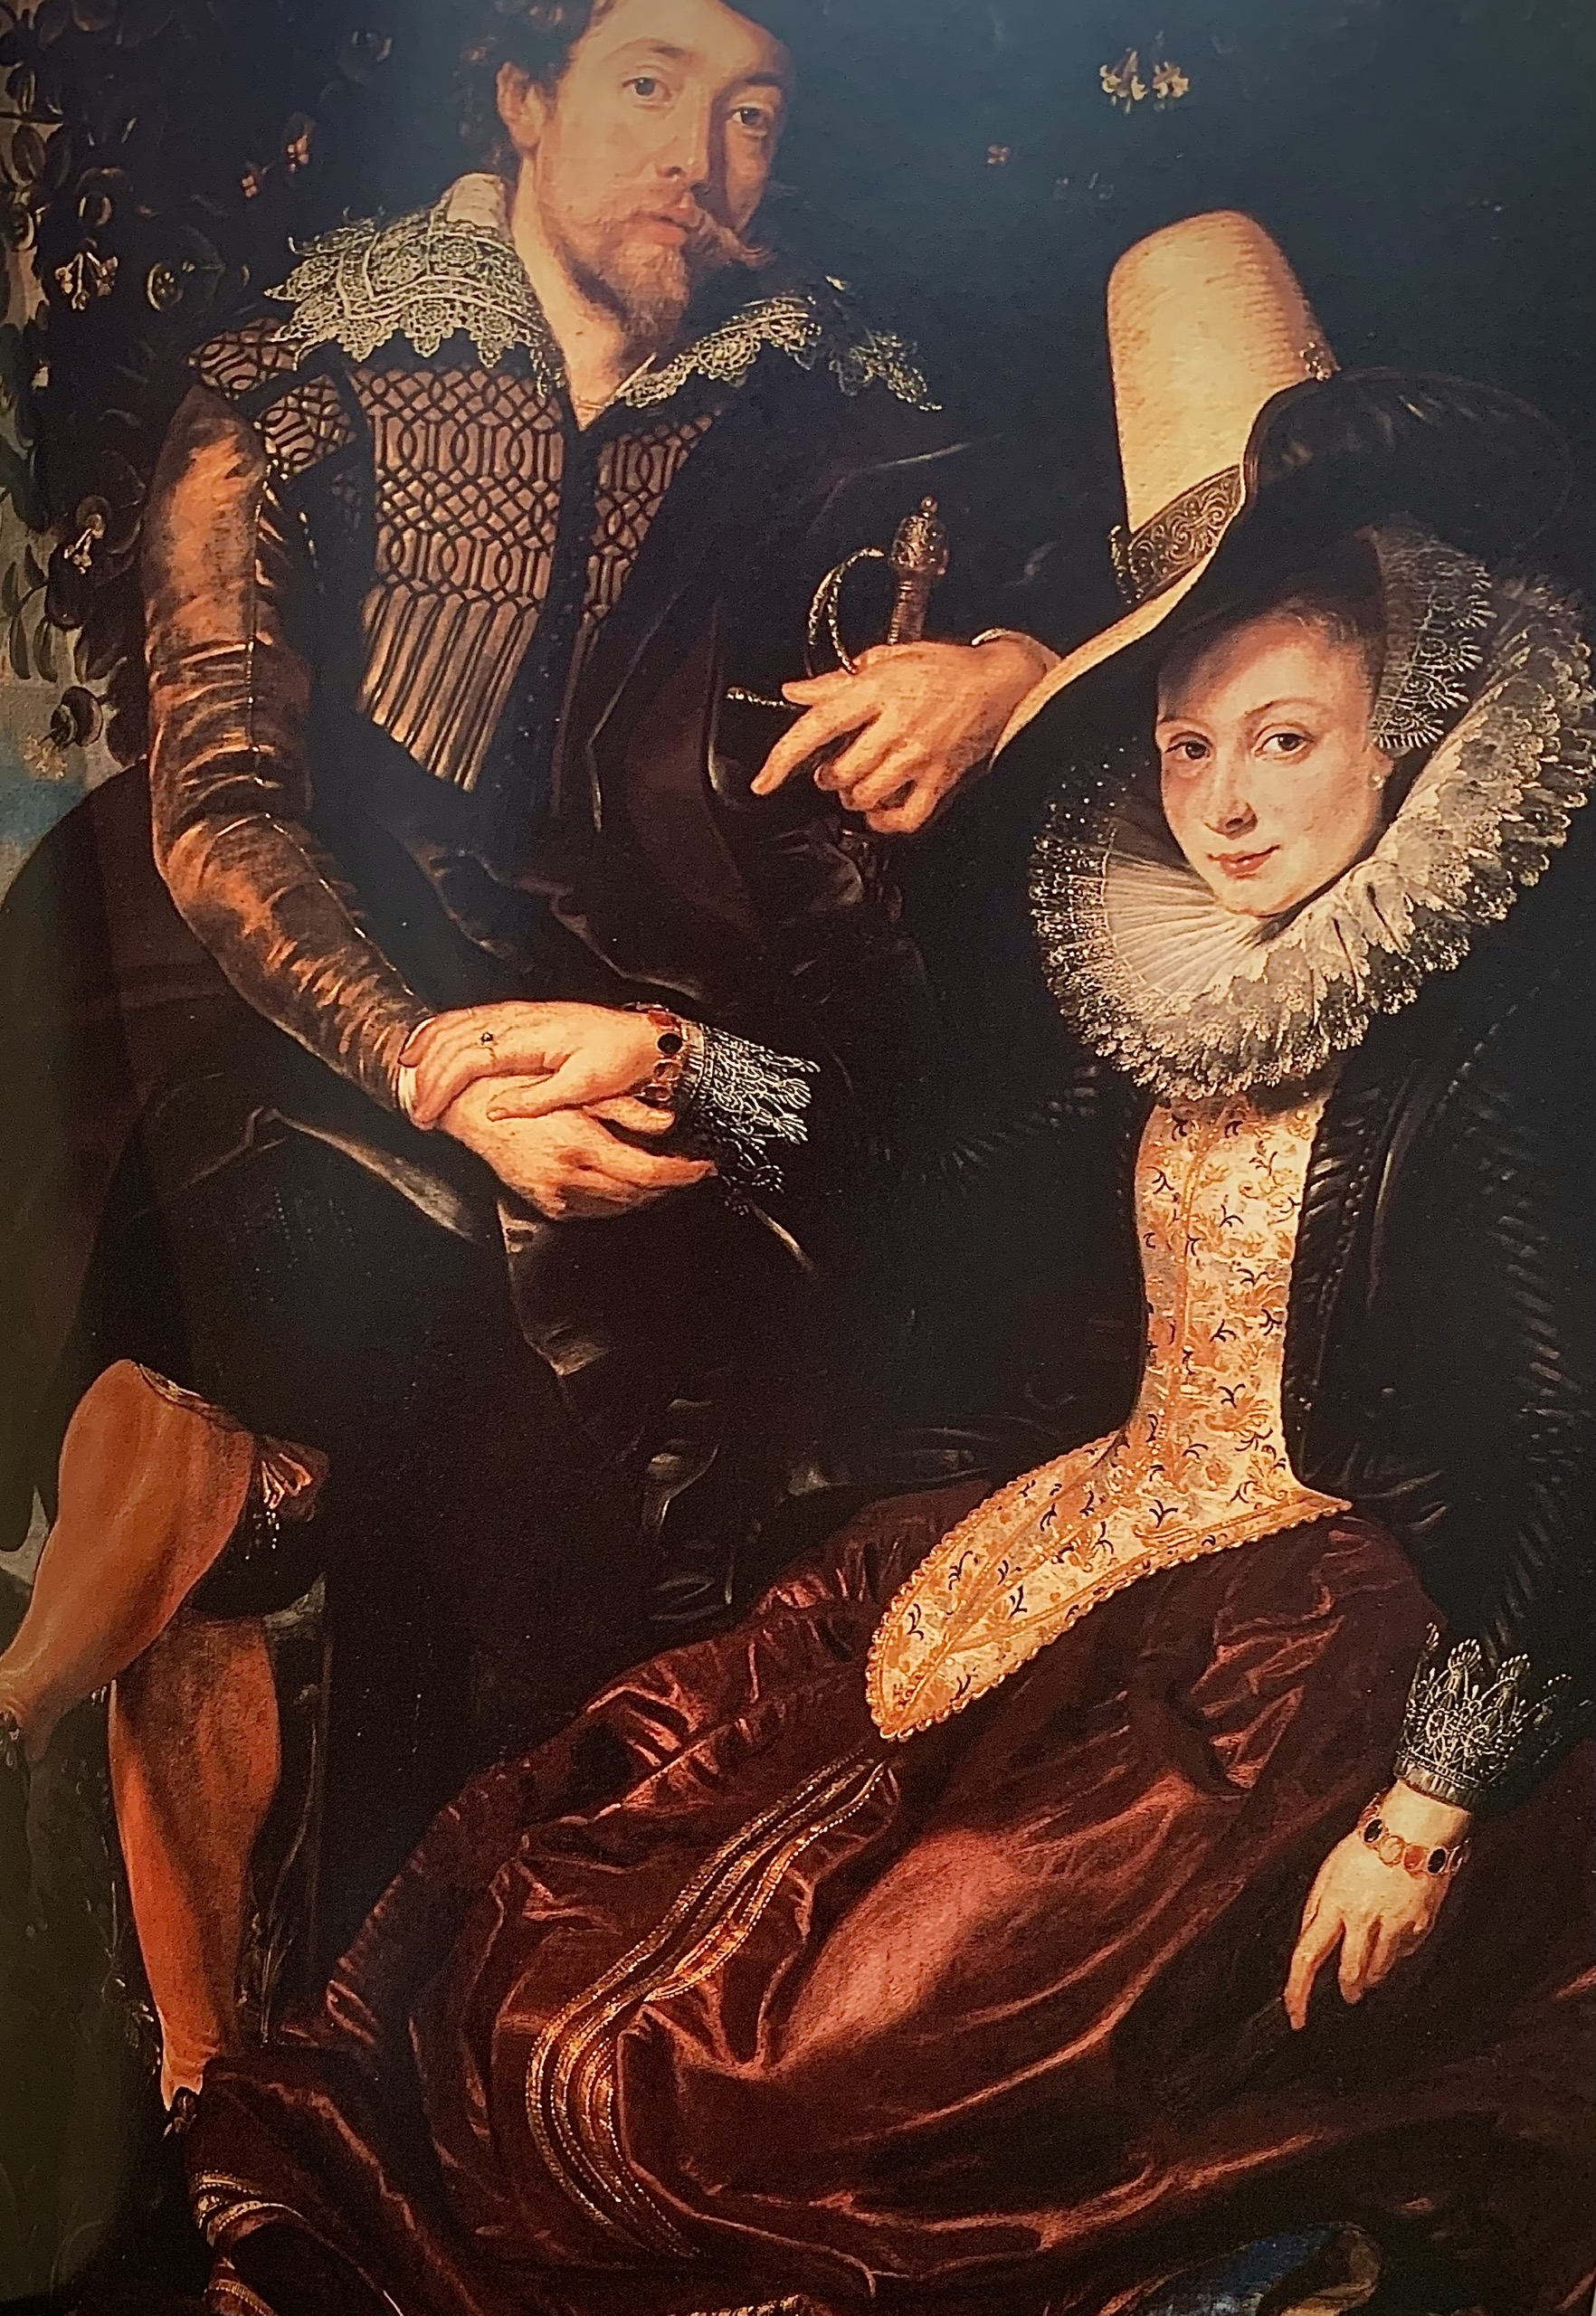 Tranh sơn dầu Peter Paul Ruben chân dung tự họa với Isabella Brandt 1609 - 1610